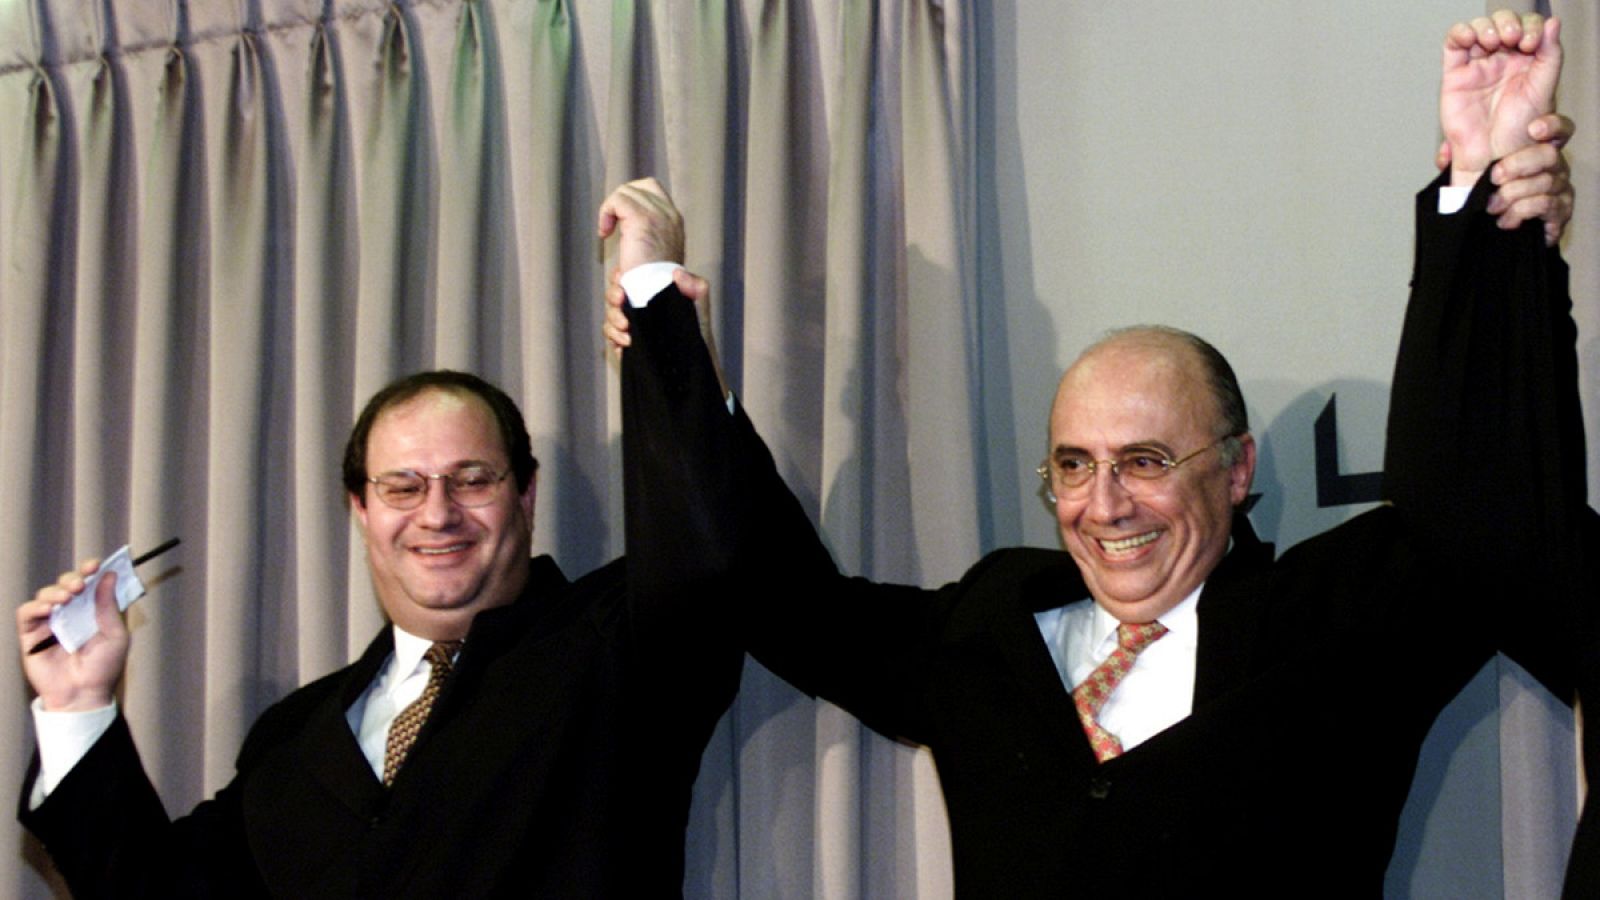 Imagen de archivo en la que el entonces presidente del Banco Central de Brasil, Henrique Meirelles, levanta el brazo de Ilan Goldfajn, economista jefe de Itaú Unibanco